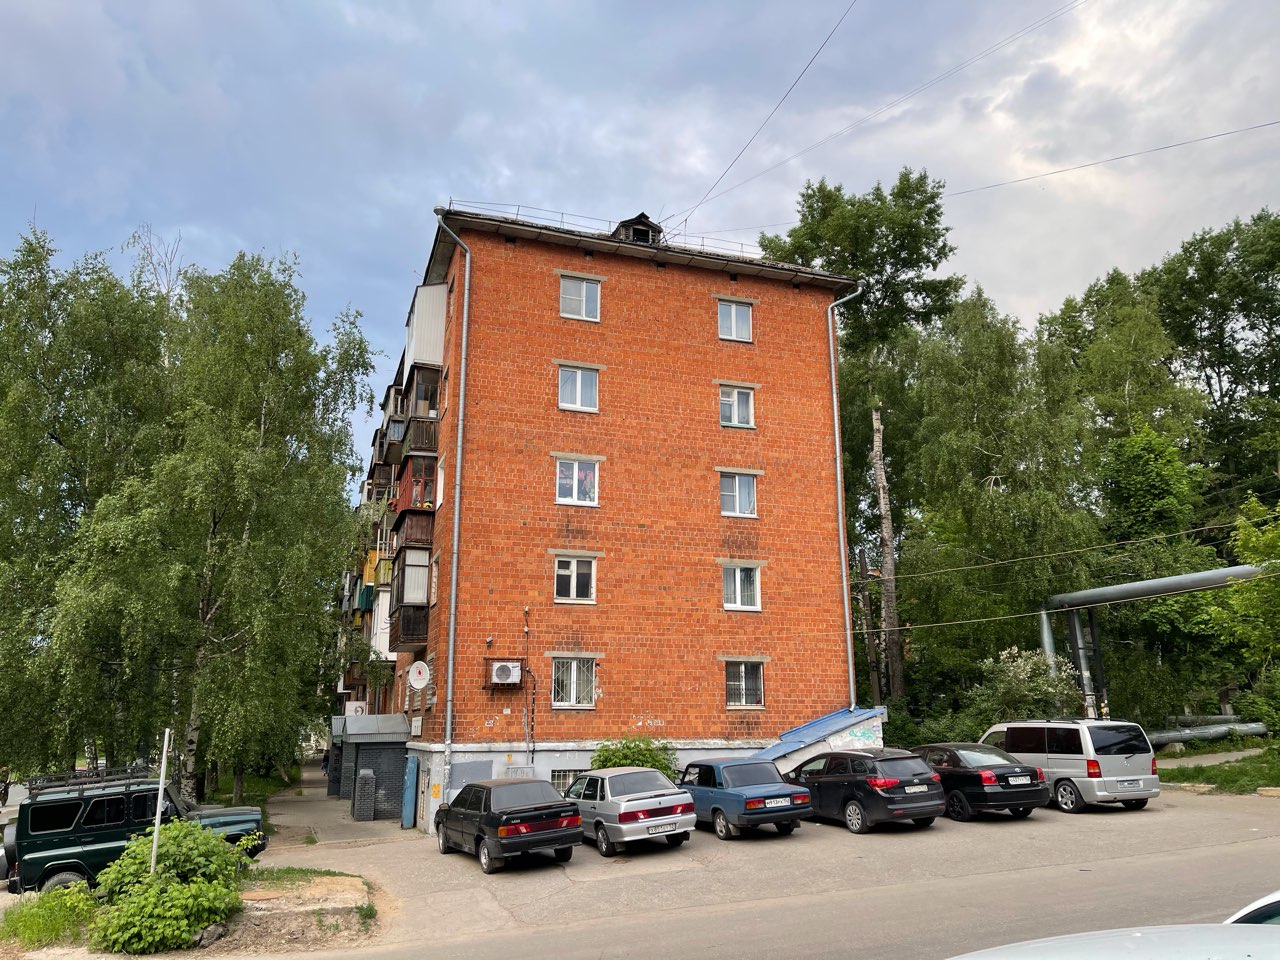 Цены на готовое жилье в Нижнем Новгороде увеличились на 5,5%   - фото 1